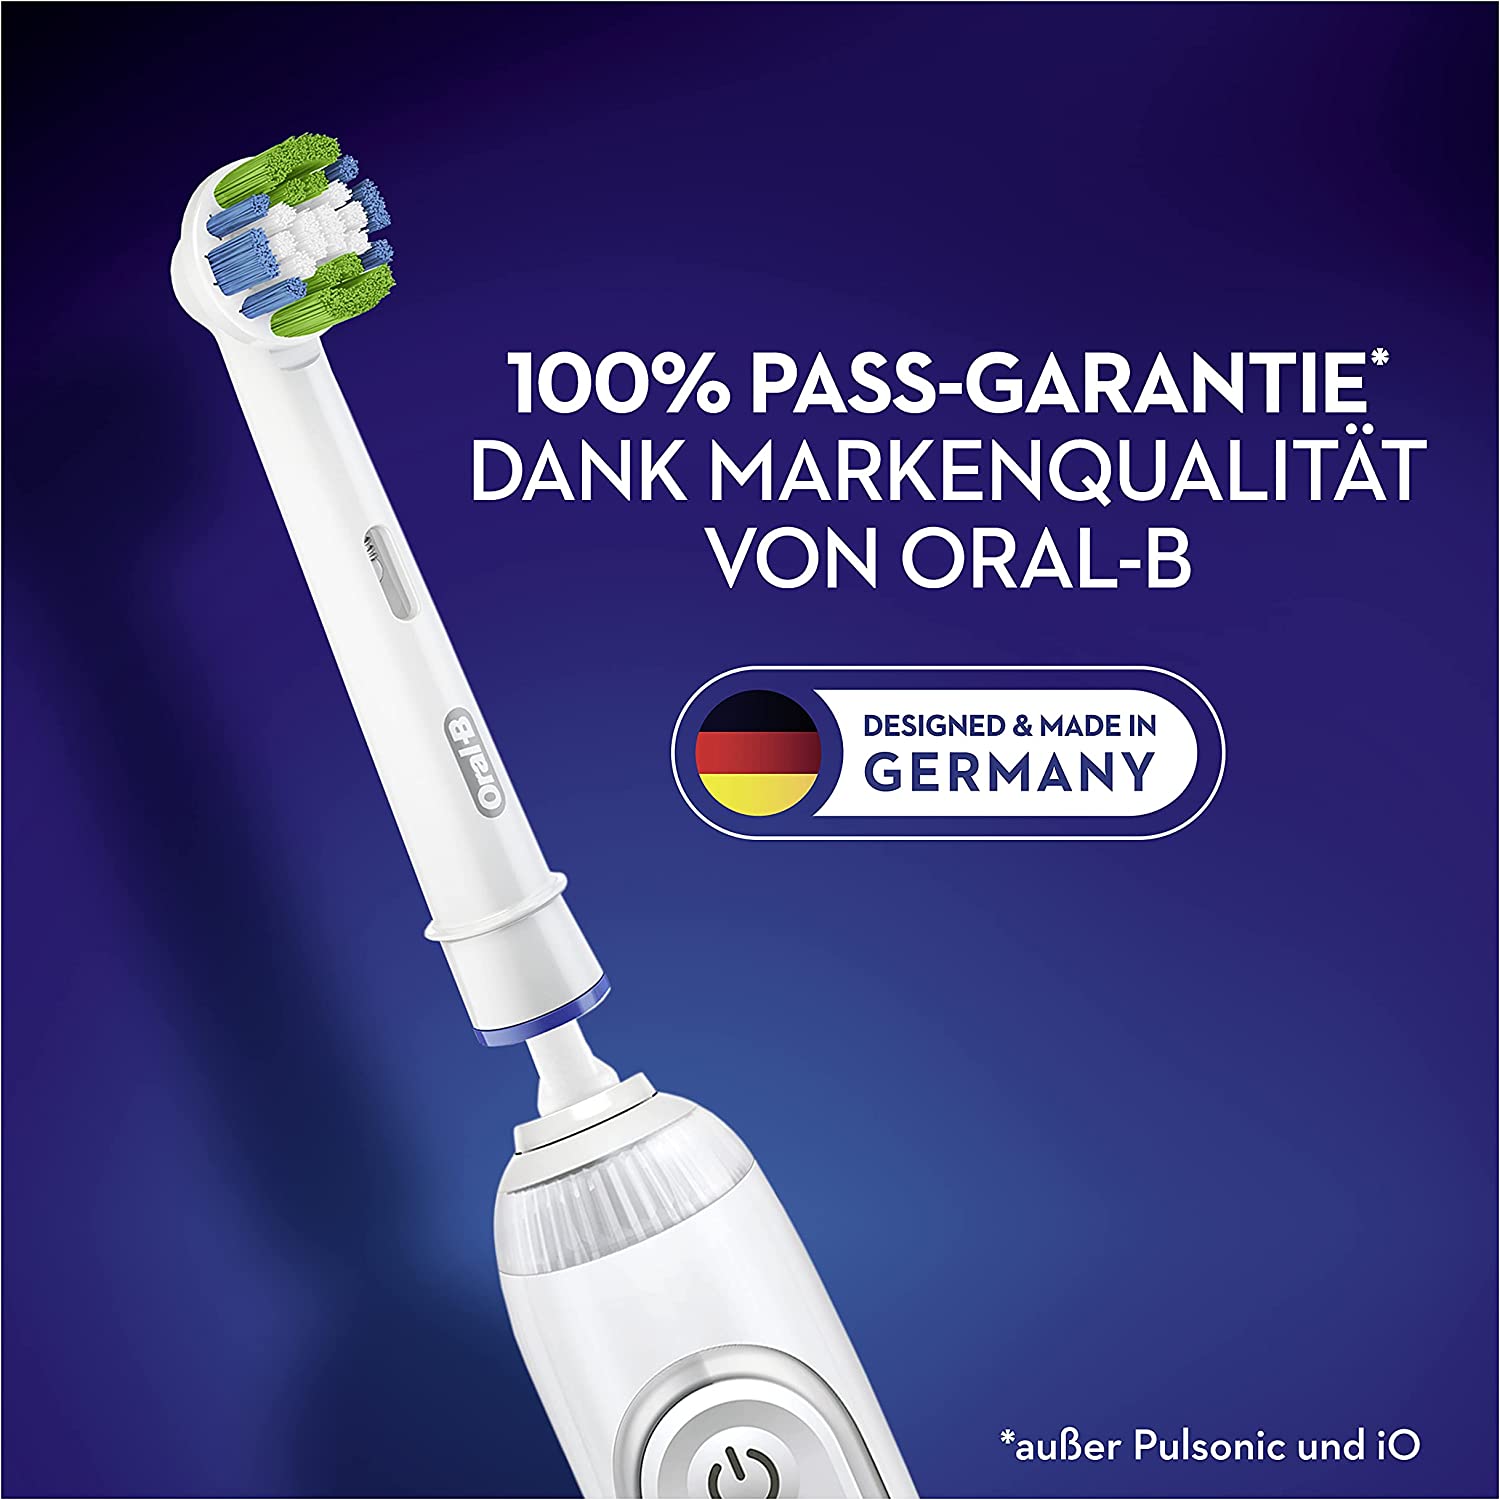 Oral-B Precision Clean Aufsteckbürsten für elektrische Zahnbürste (1x8er Pack)